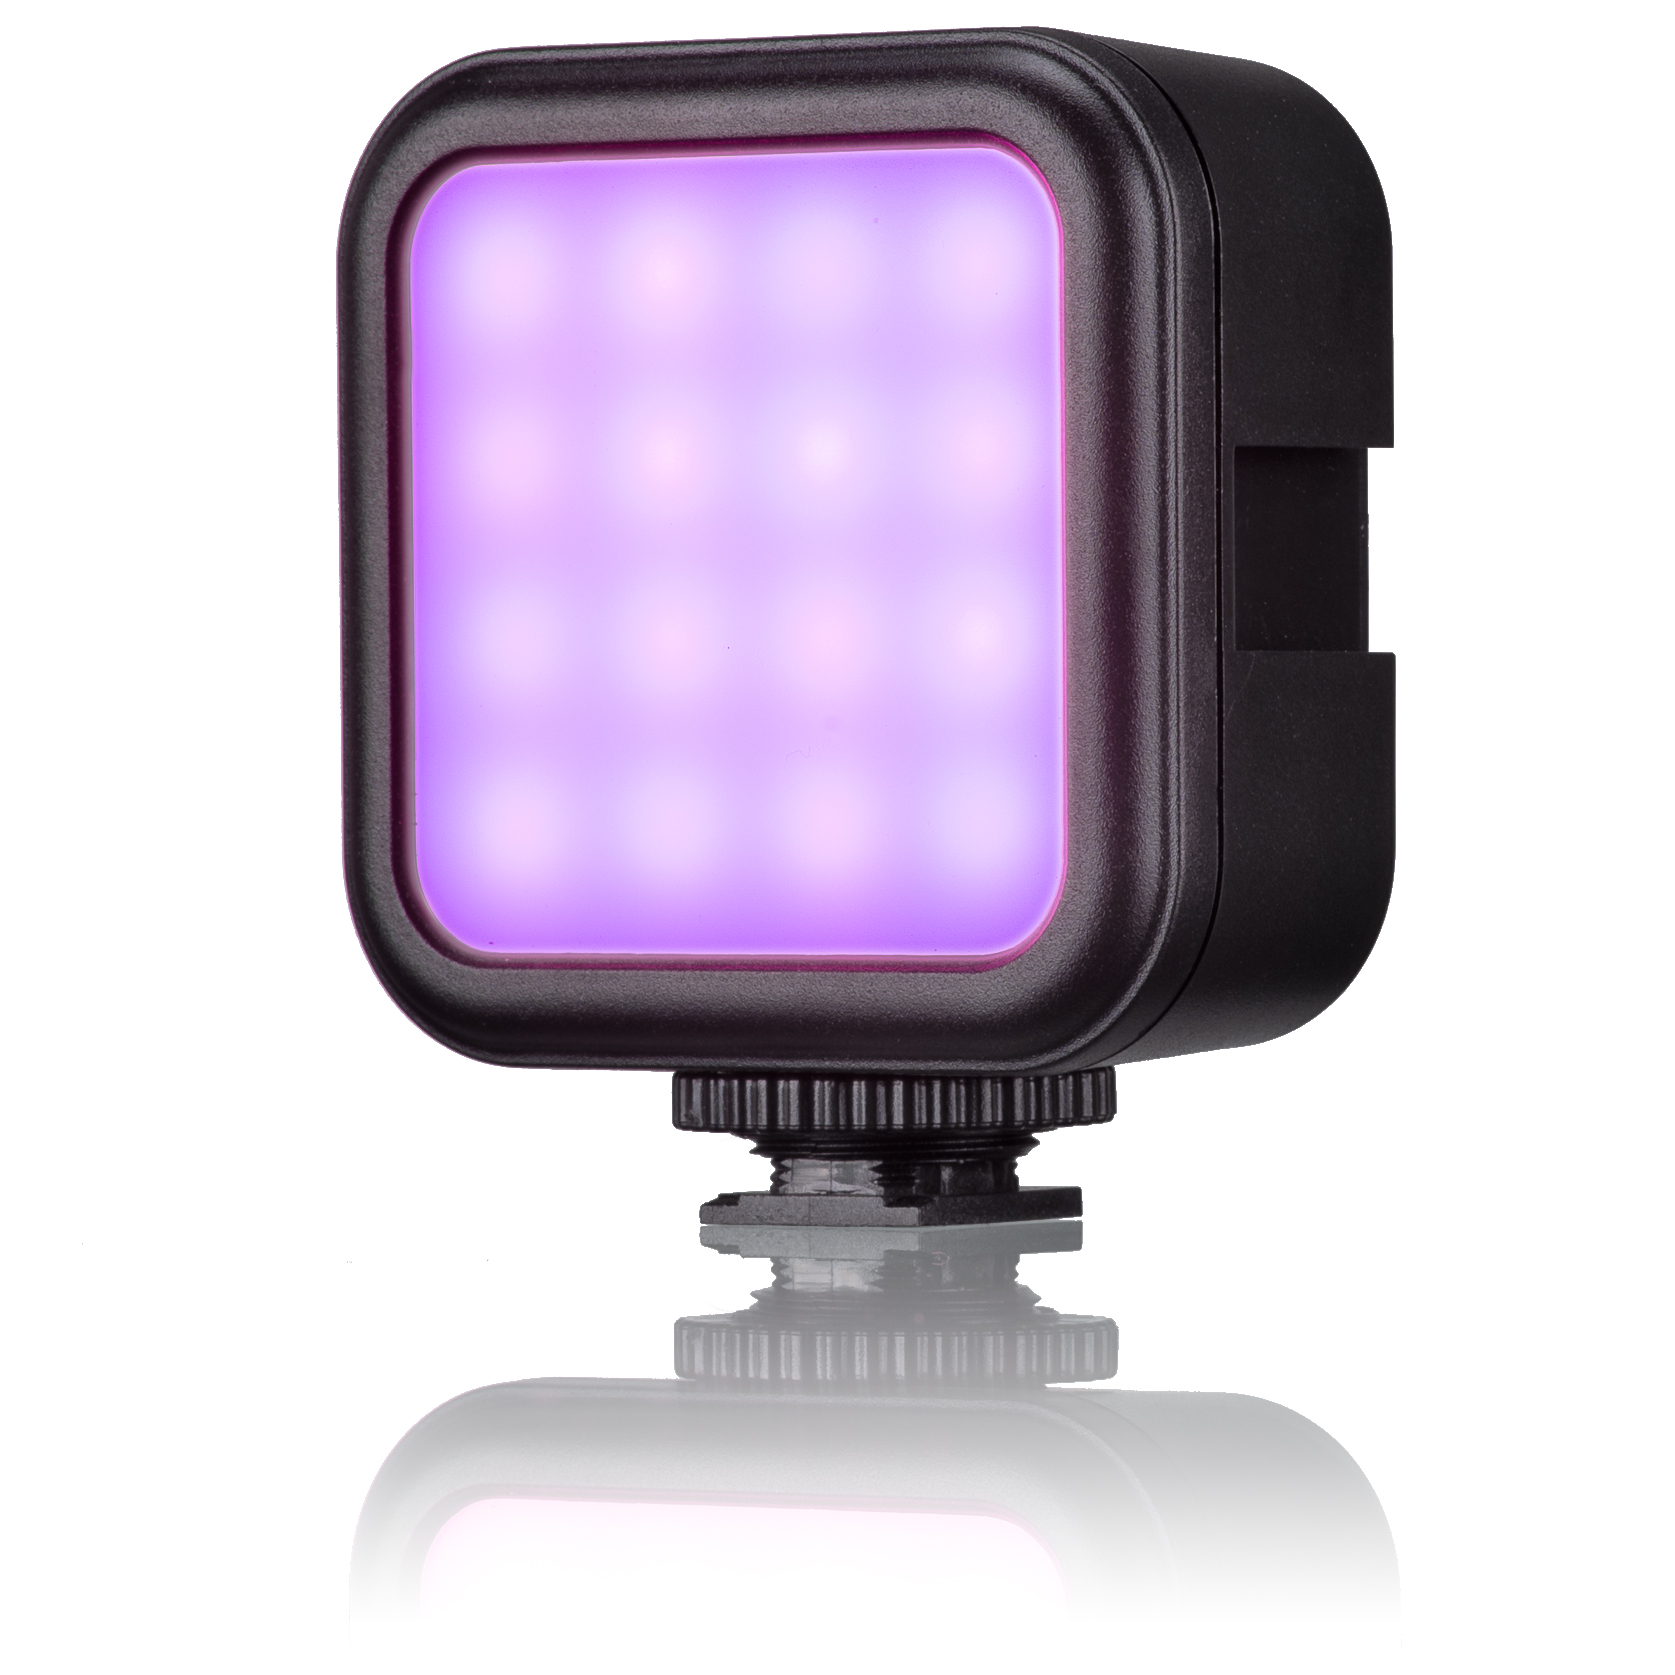 BRESSER BR-49 RGB Pocket LED - Refurbished